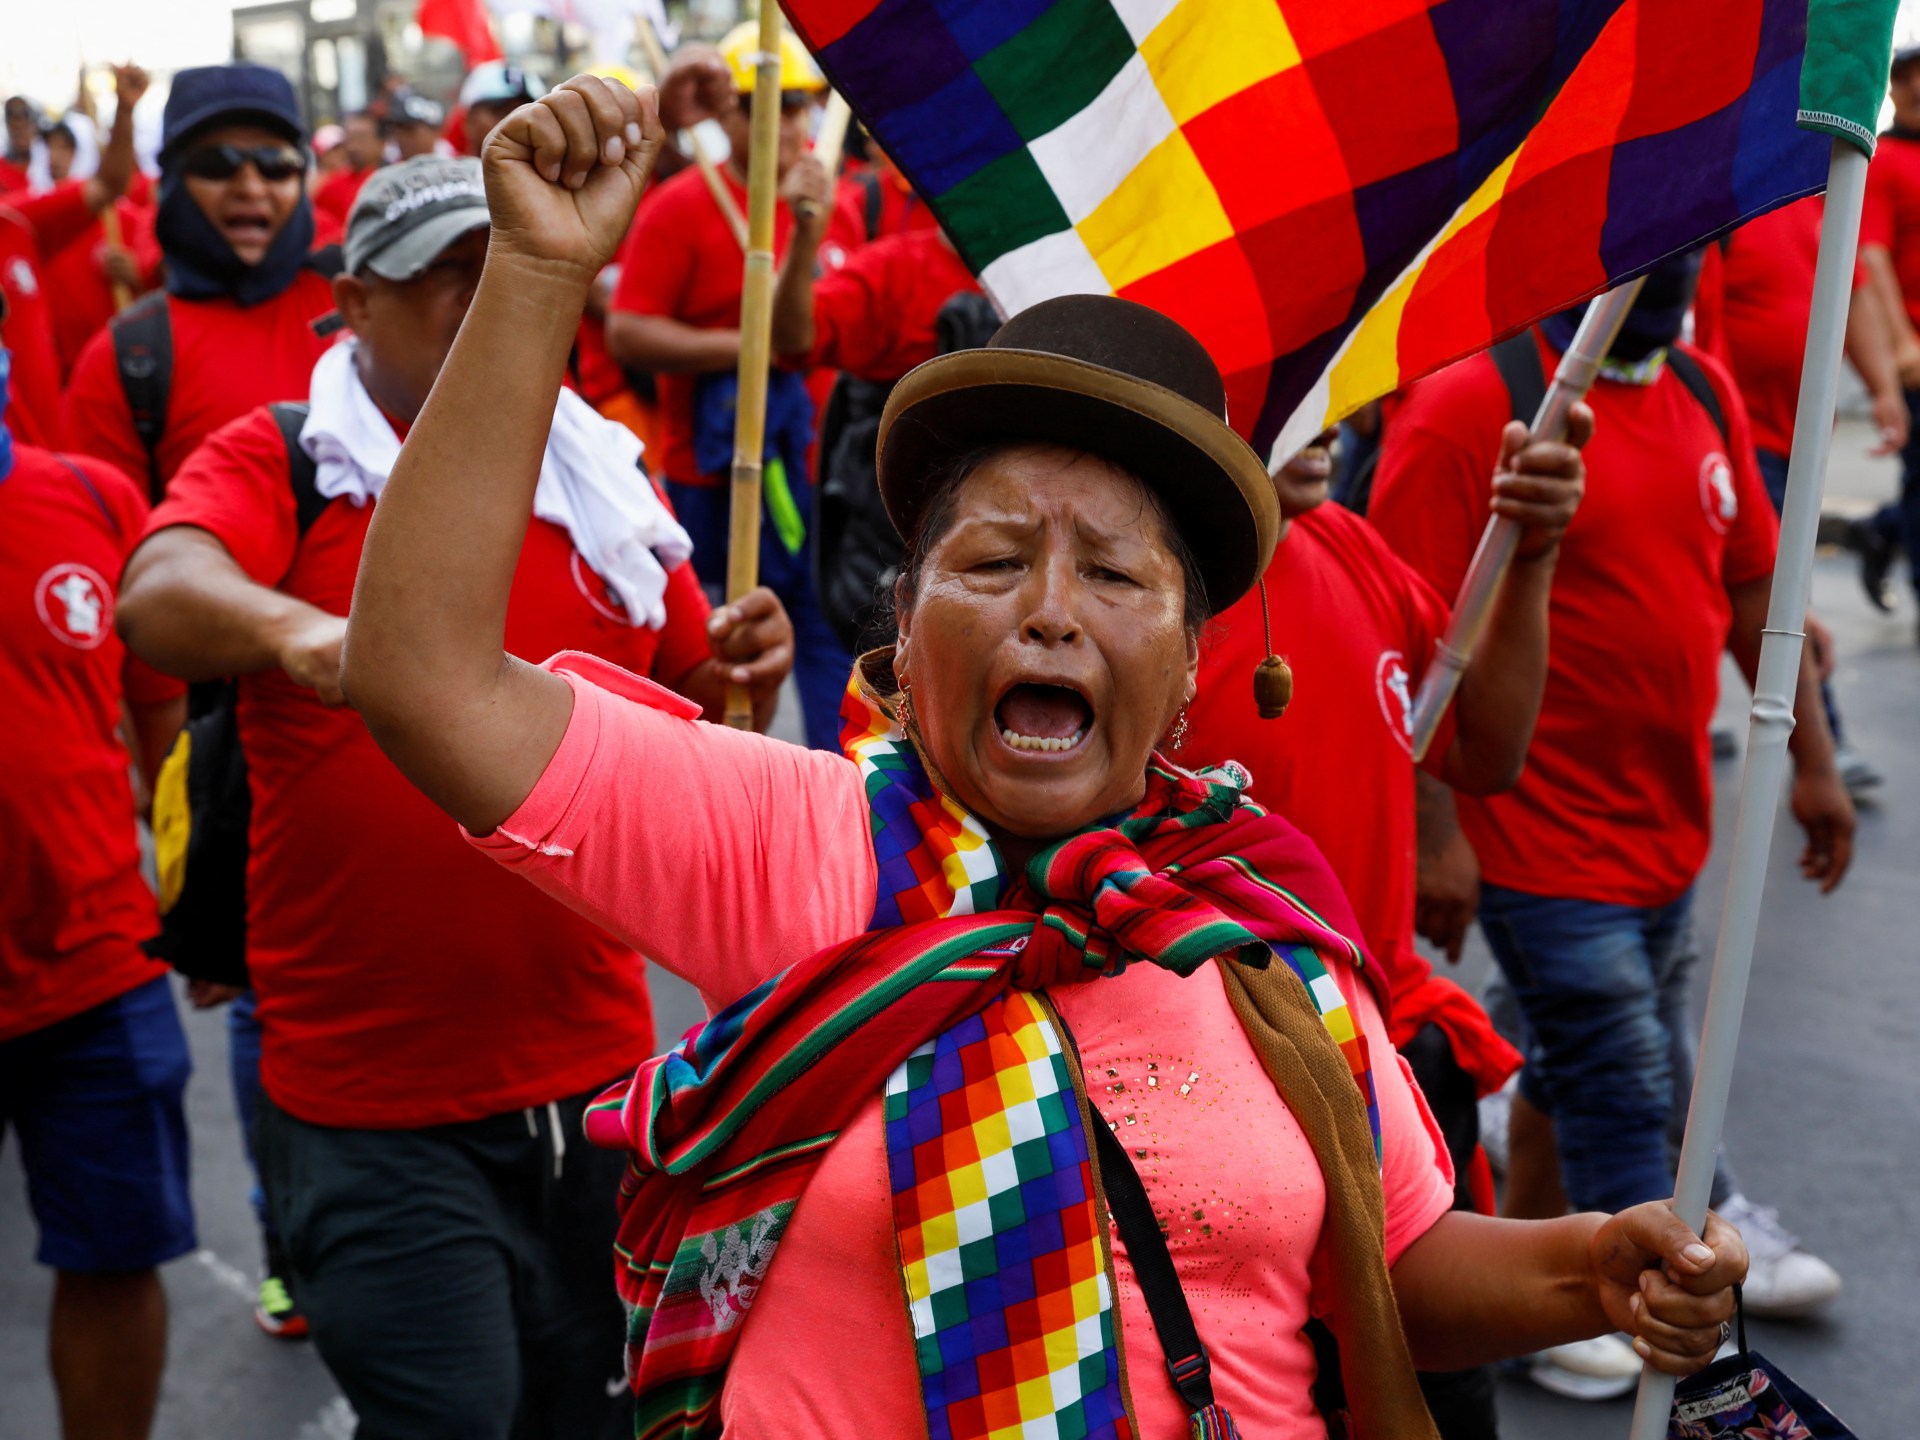 Memahami protes di Peru |  Opini